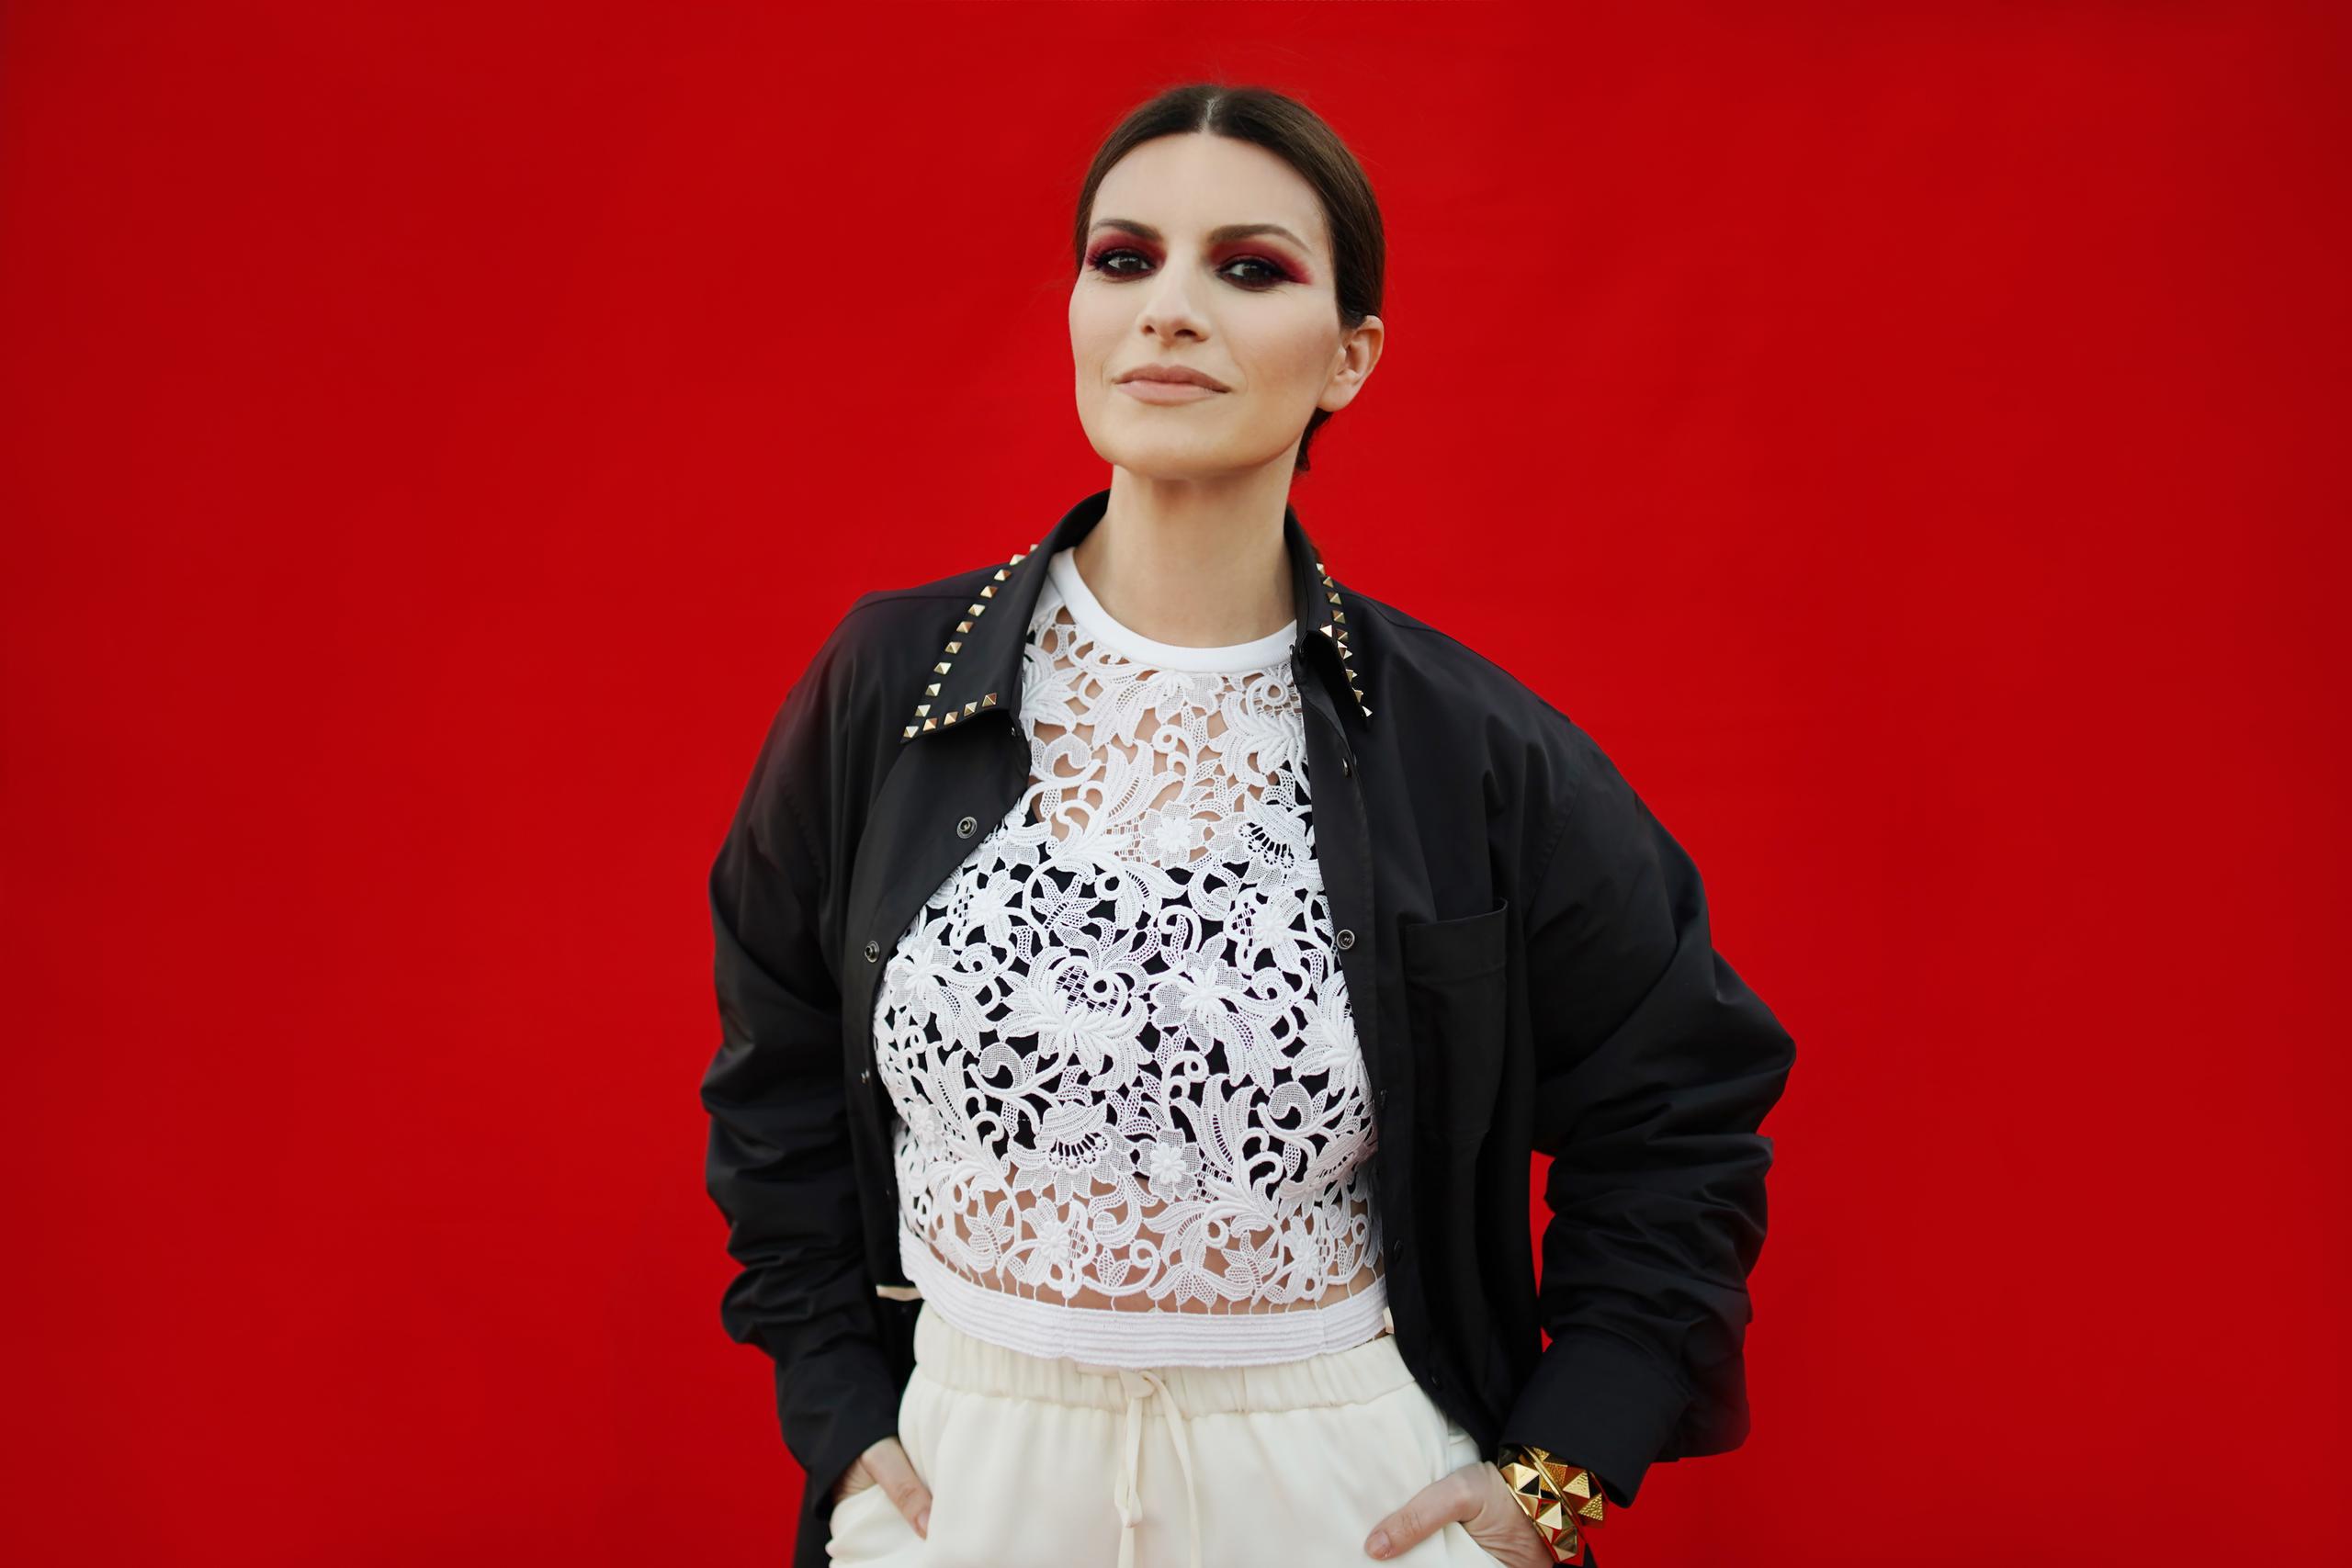 La cantante italiana Laura Pausini fue nominada al Oscar a mejor canción original por “Io Sí”, tema de la película “La vita davanti a sé”.